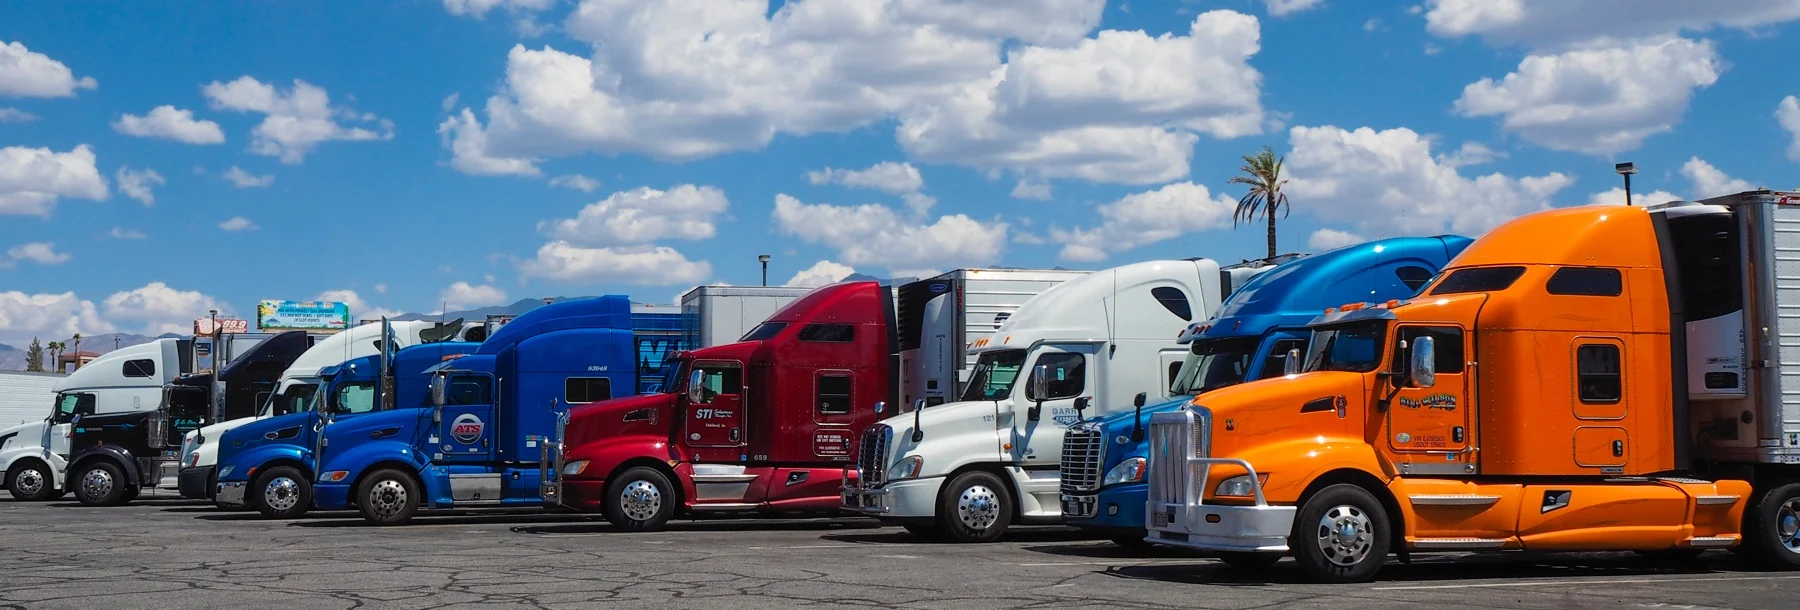 Fleet of trucks ready for inspection